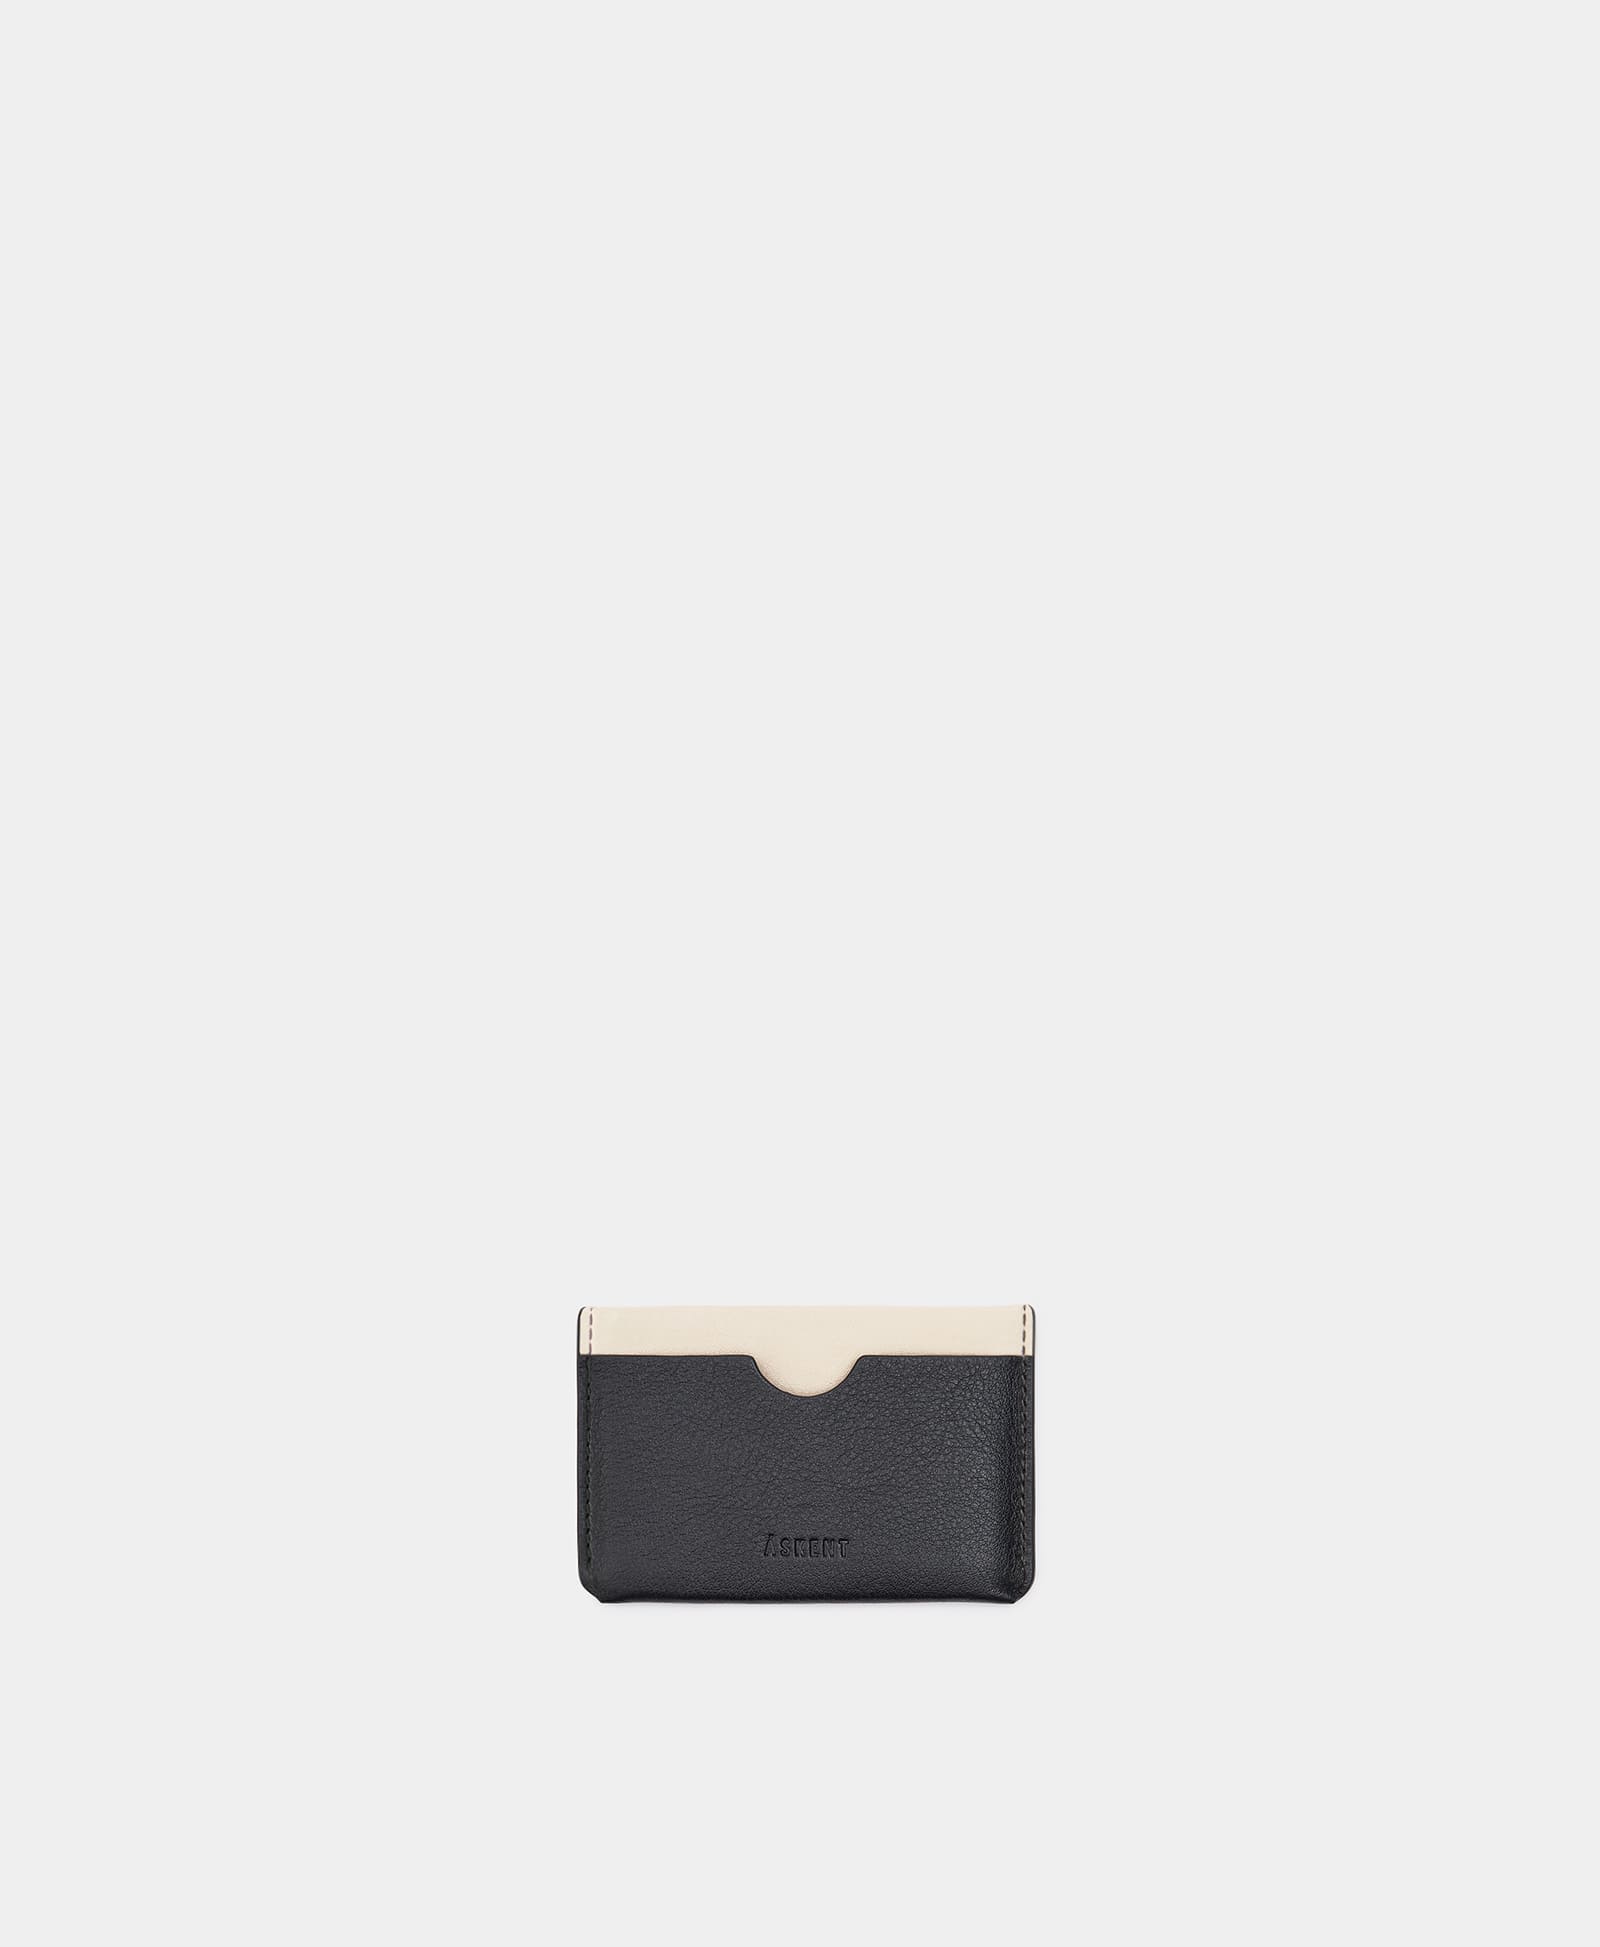 МИНИ-КРЕДИТНИЦА мини кошелек bello тутти для женщин оригинальный маленький бумажник на защелке из натуральной овечьей кожи кредитница на молнии